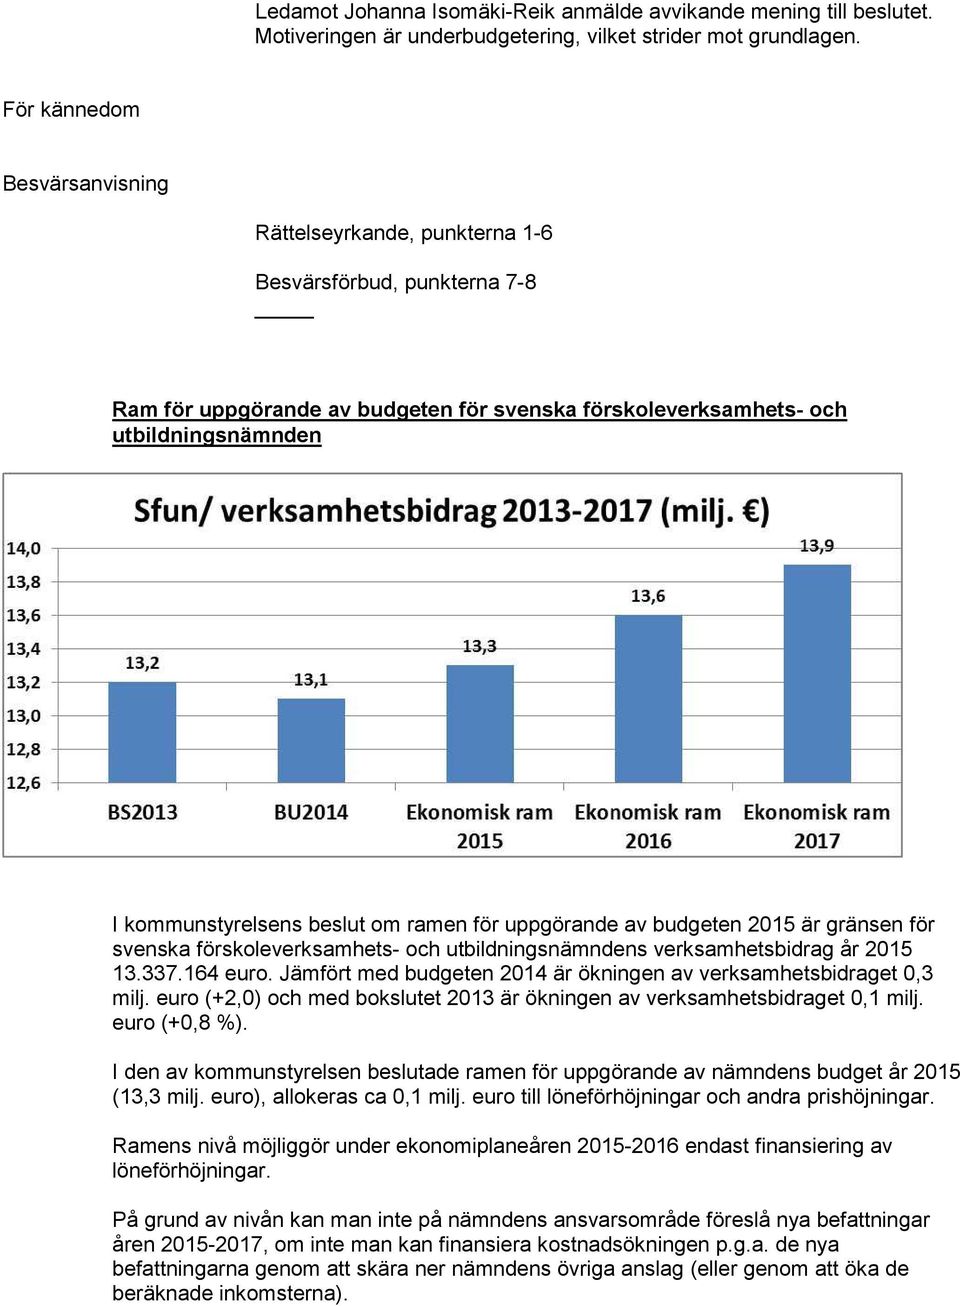 beslut om ramen för uppgörande av budgeten 2015 är gränsen för svenska förskoleverksamhets- och utbildningsnämndens verksamhetsbidrag år 2015 13.337.164 euro.